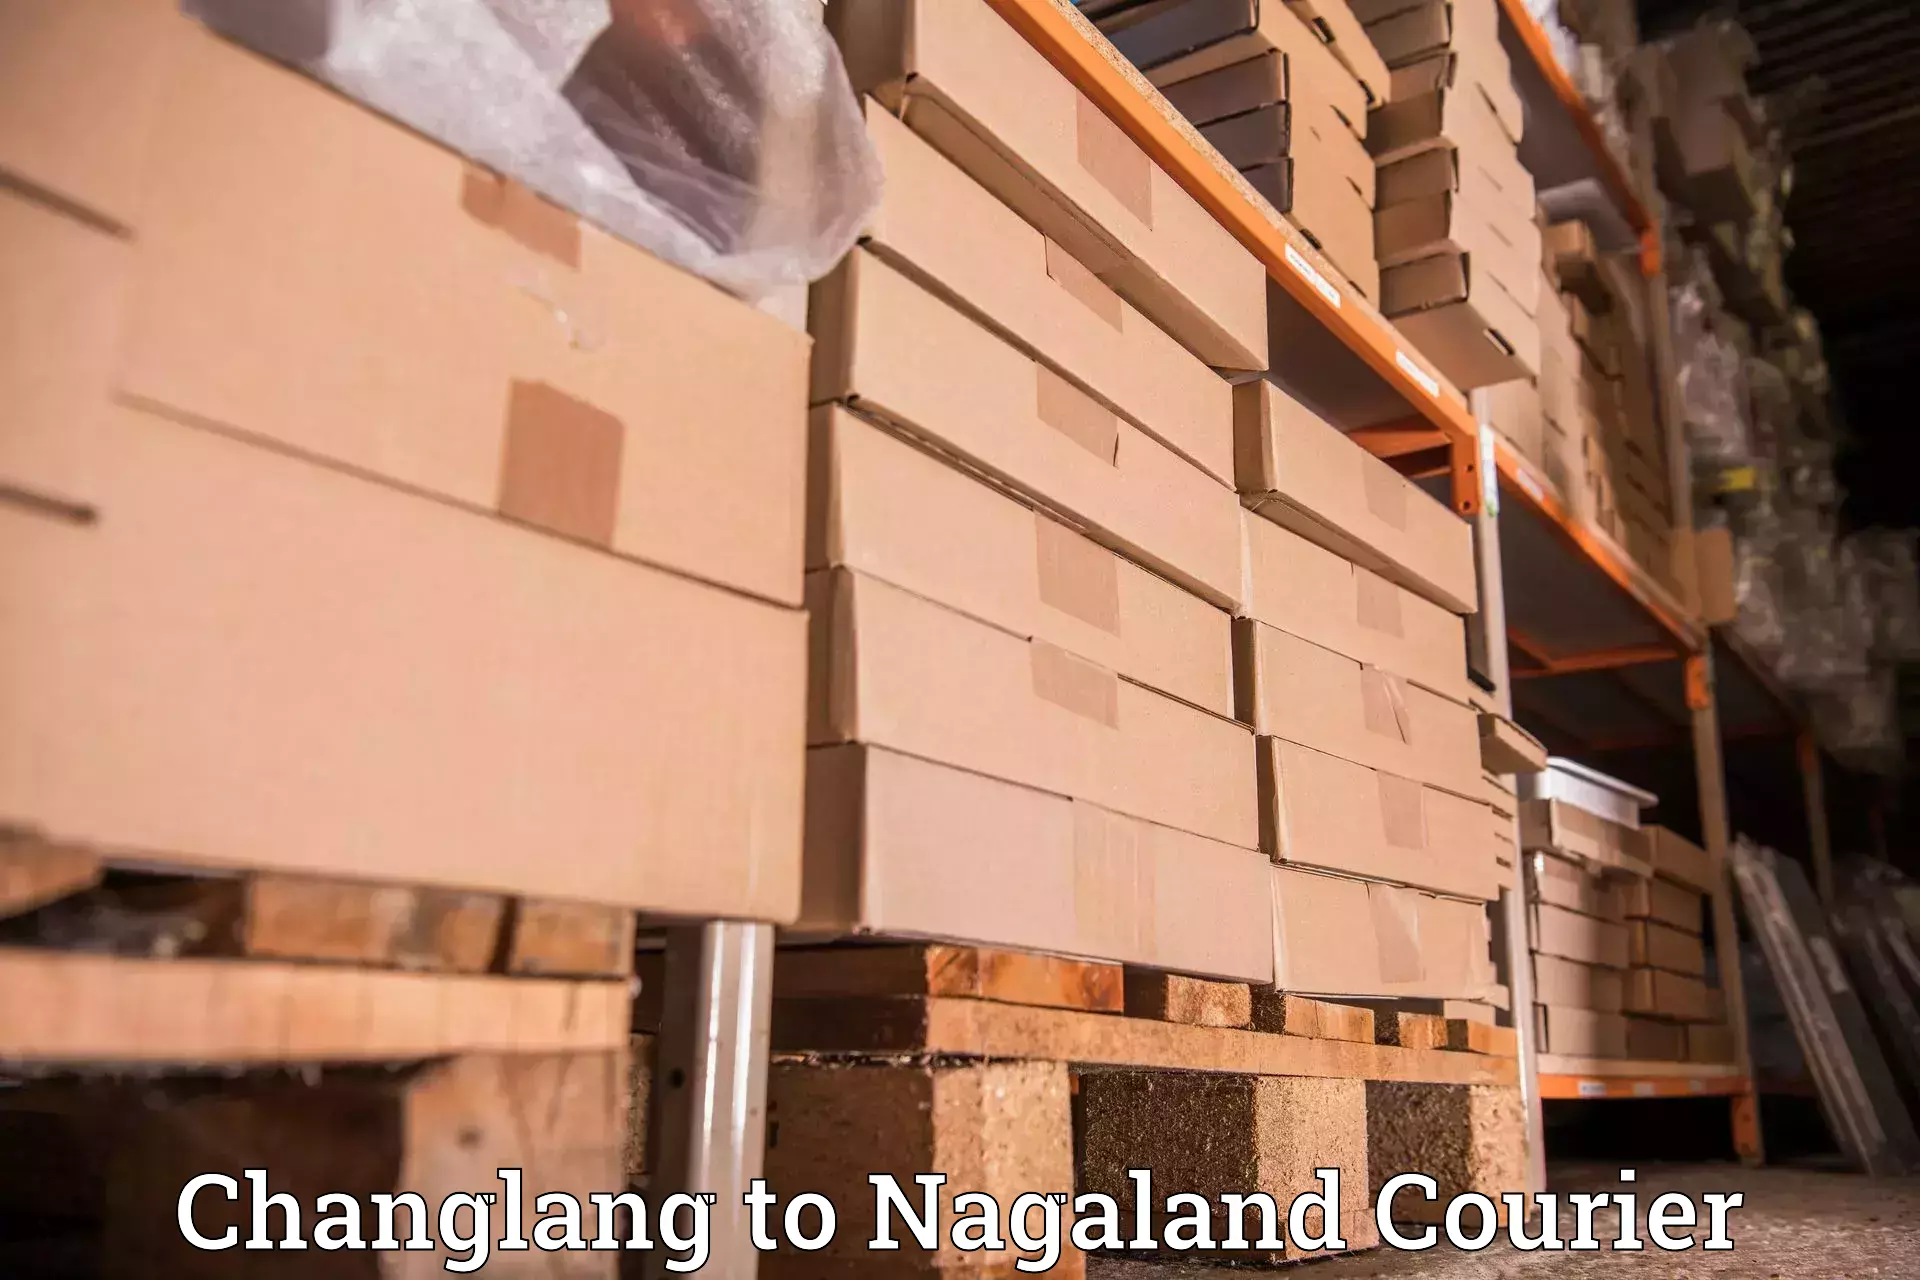 Express logistics service Changlang to Nagaland